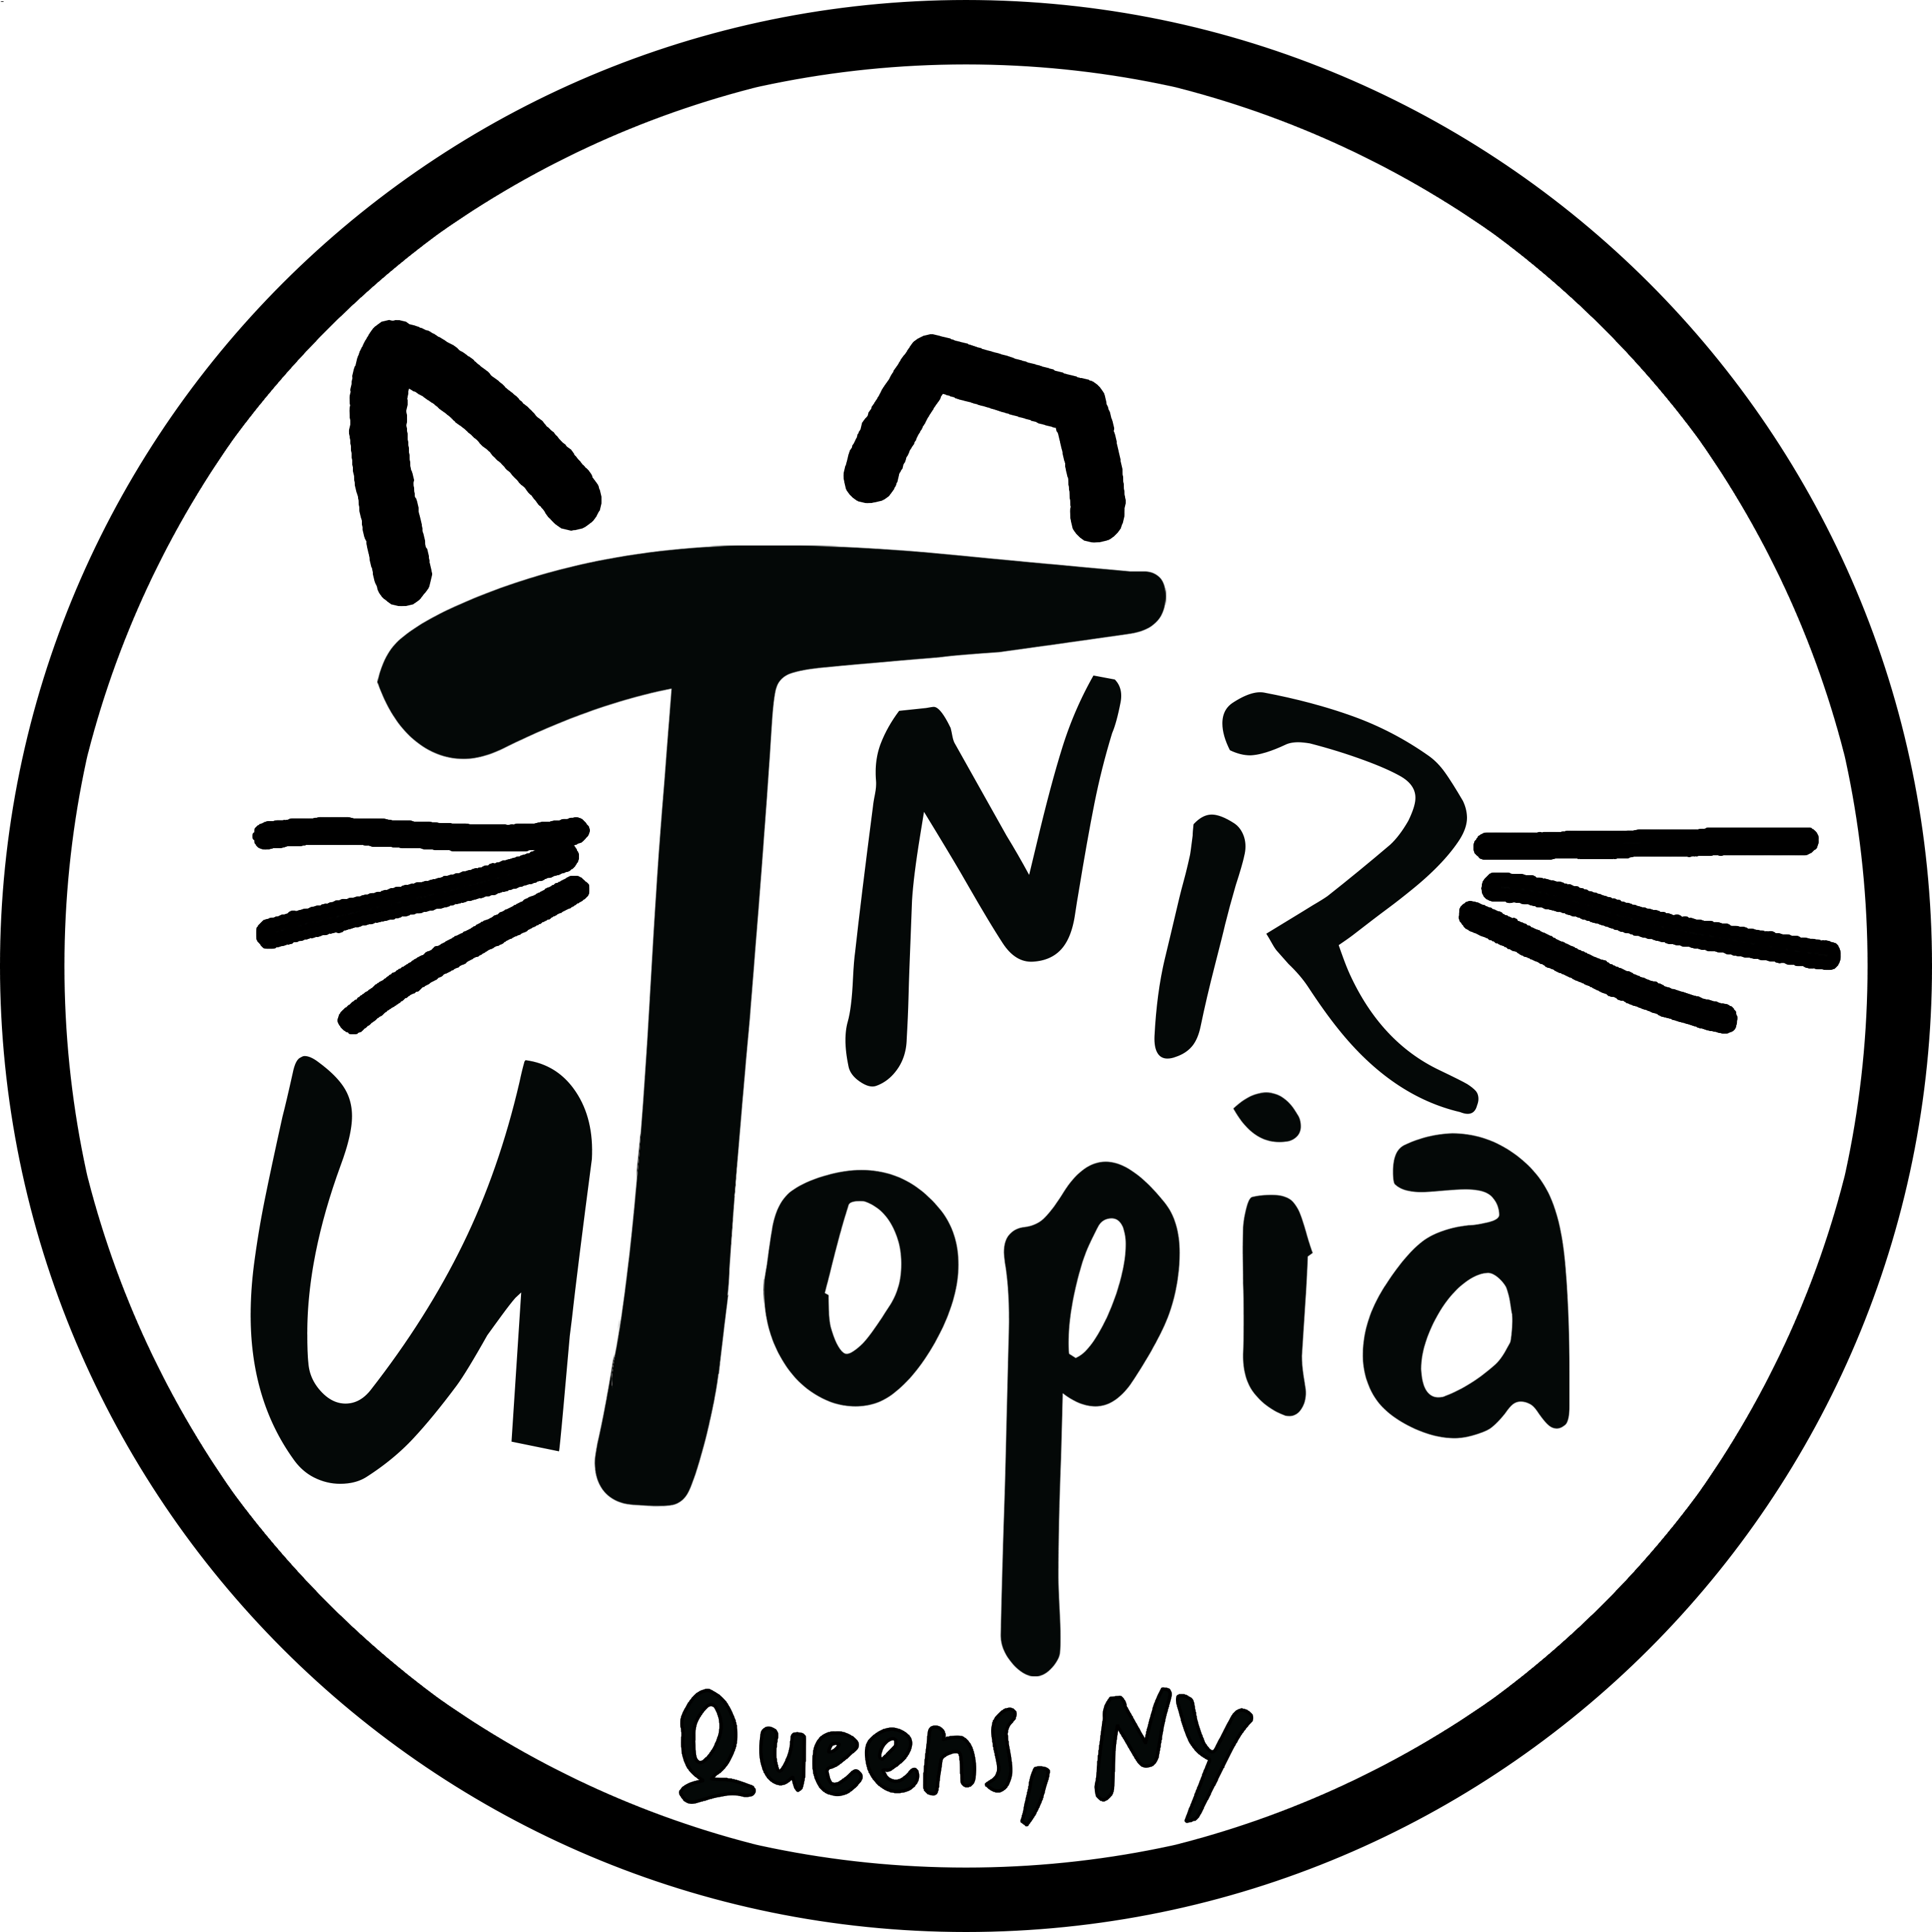 TNR Utopia